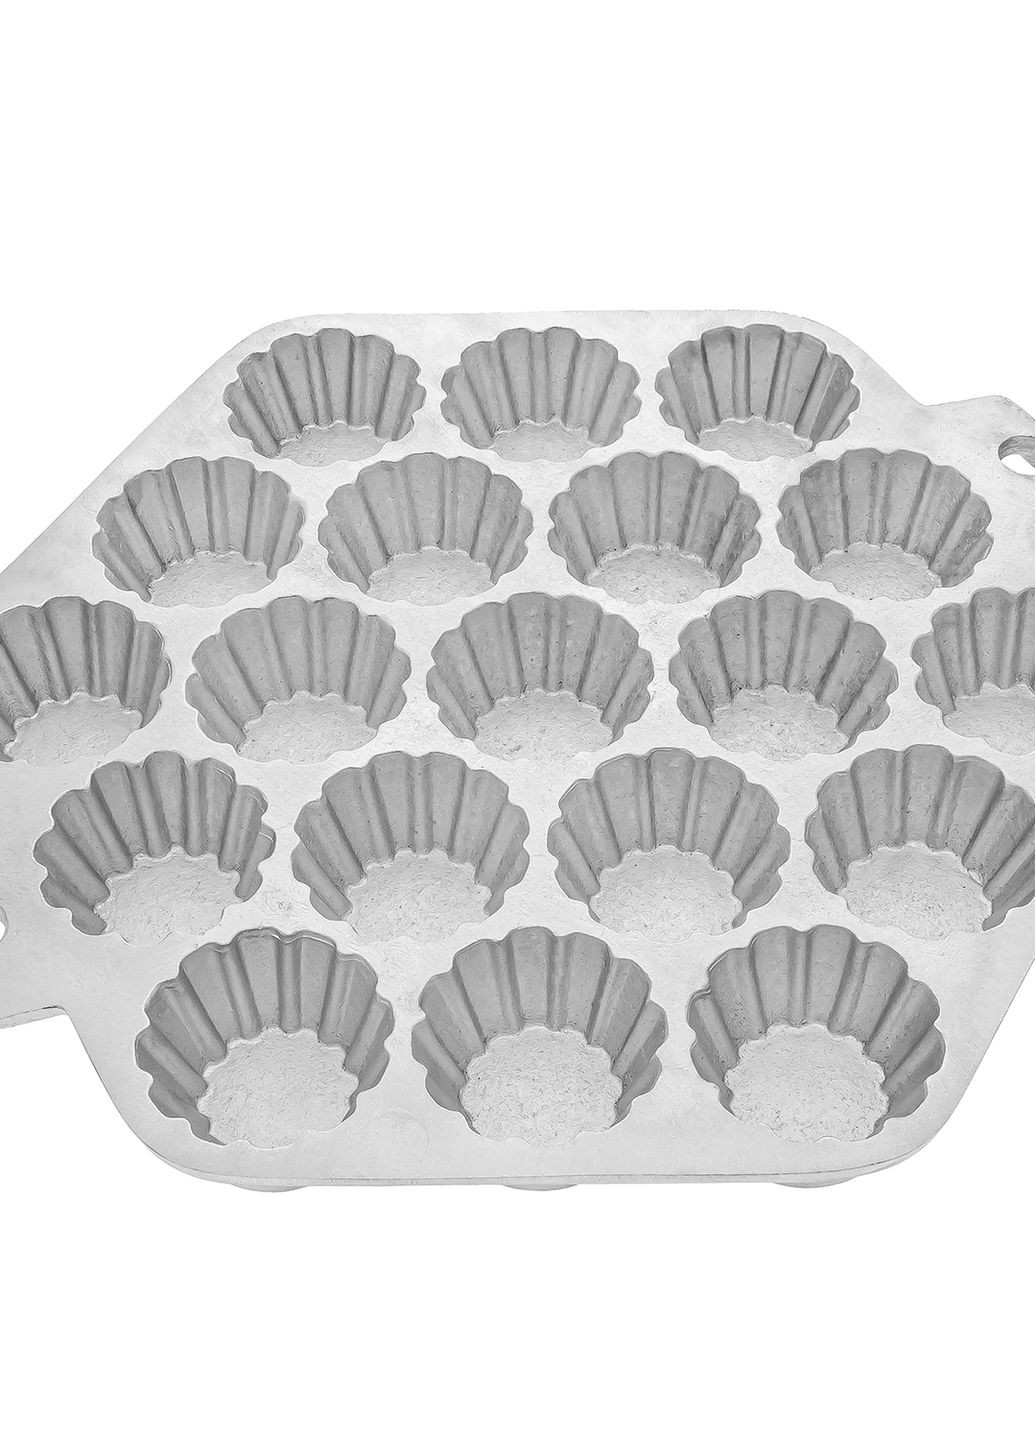 Форма большая с крышкой тарталетница для выпечки кексов, корзинок, тарталеток и пончиков (19 корзинок) Ласунка (275104141)